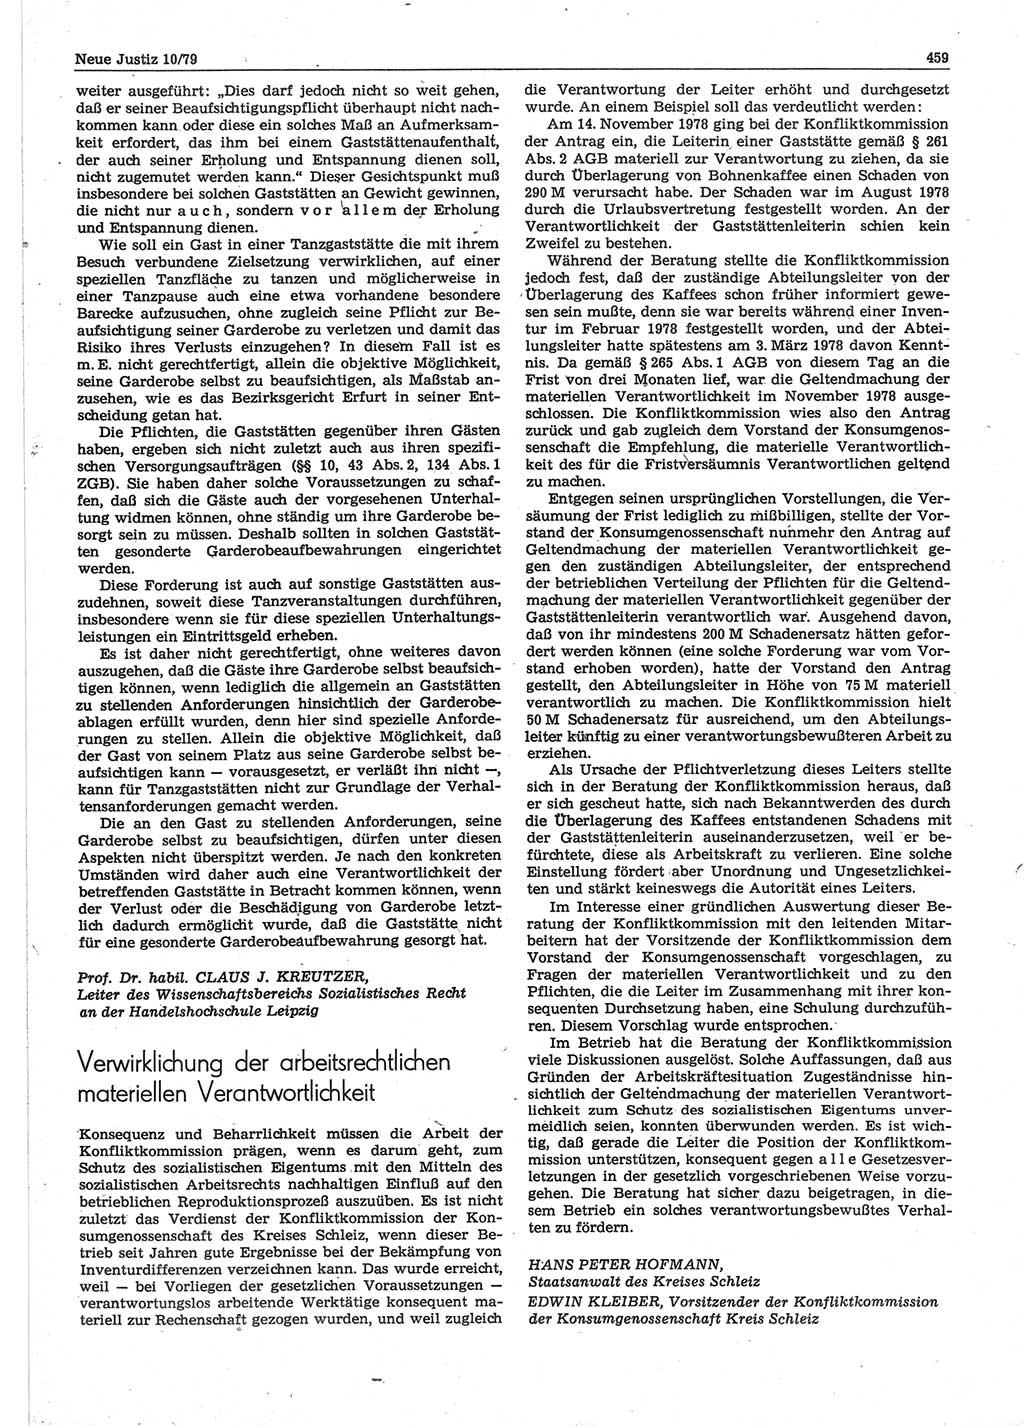 Neue Justiz (NJ), Zeitschrift für sozialistisches Recht und Gesetzlichkeit [Deutsche Demokratische Republik (DDR)], 33. Jahrgang 1979, Seite 459 (NJ DDR 1979, S. 459)